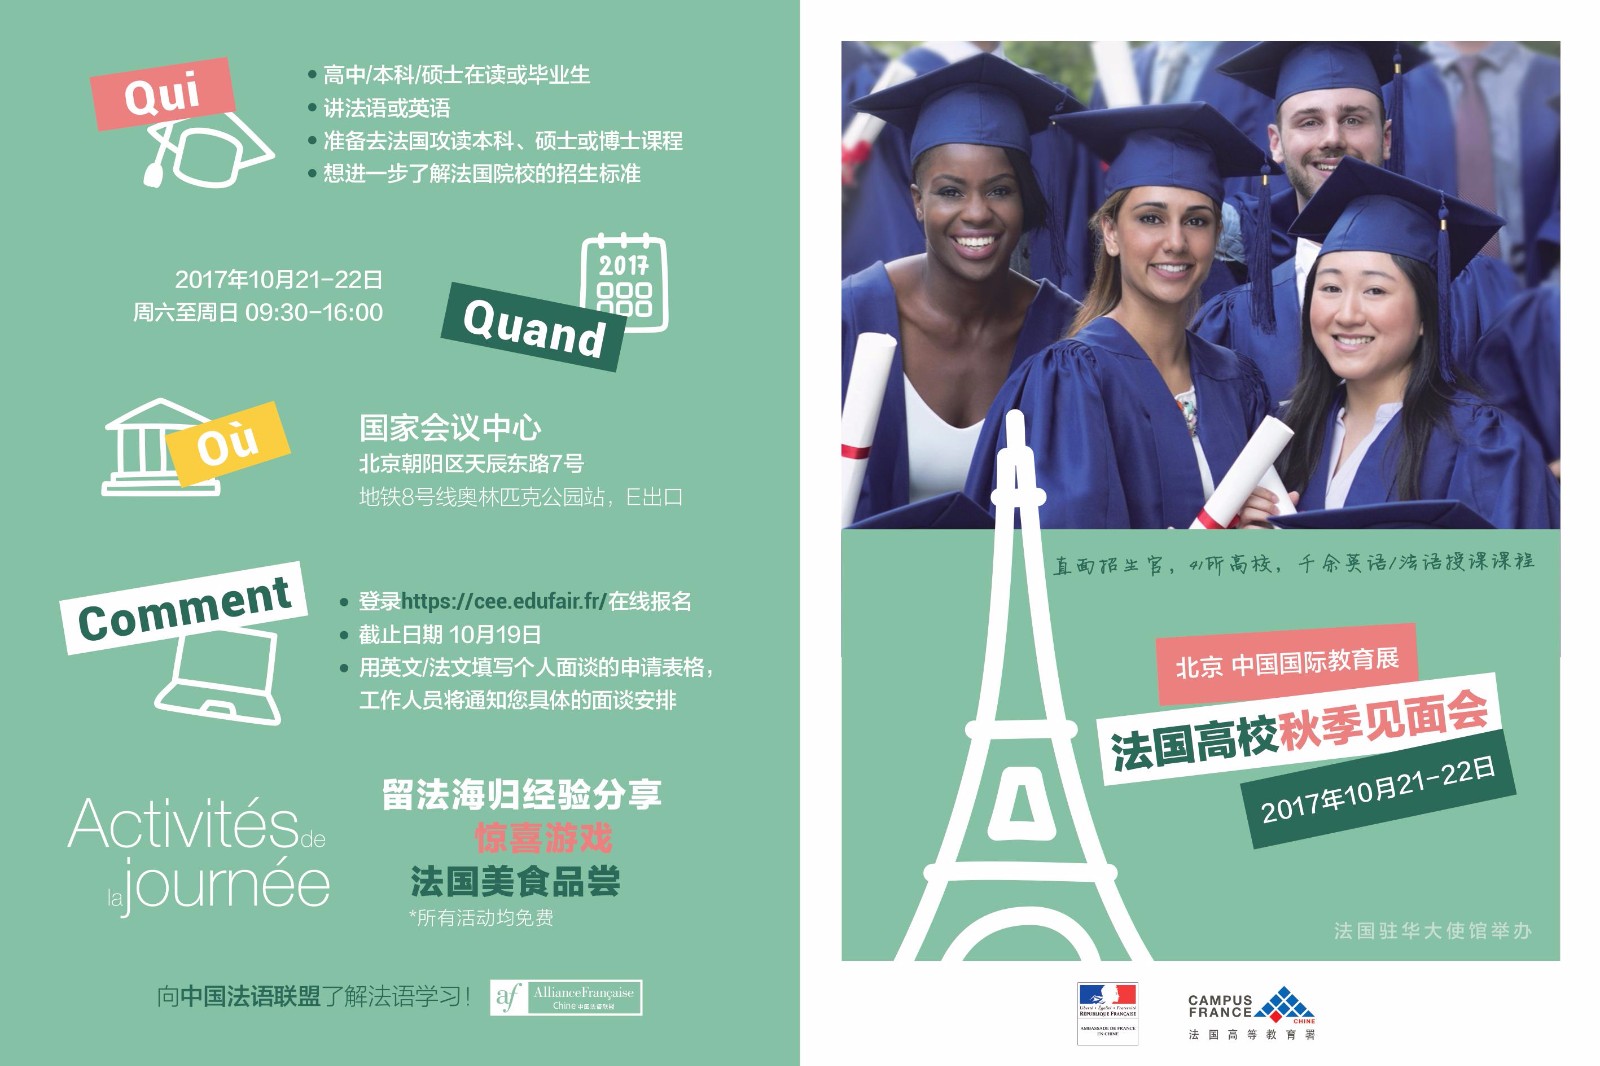 【法国高校见面会】2017法国高校秋季见面会北京站